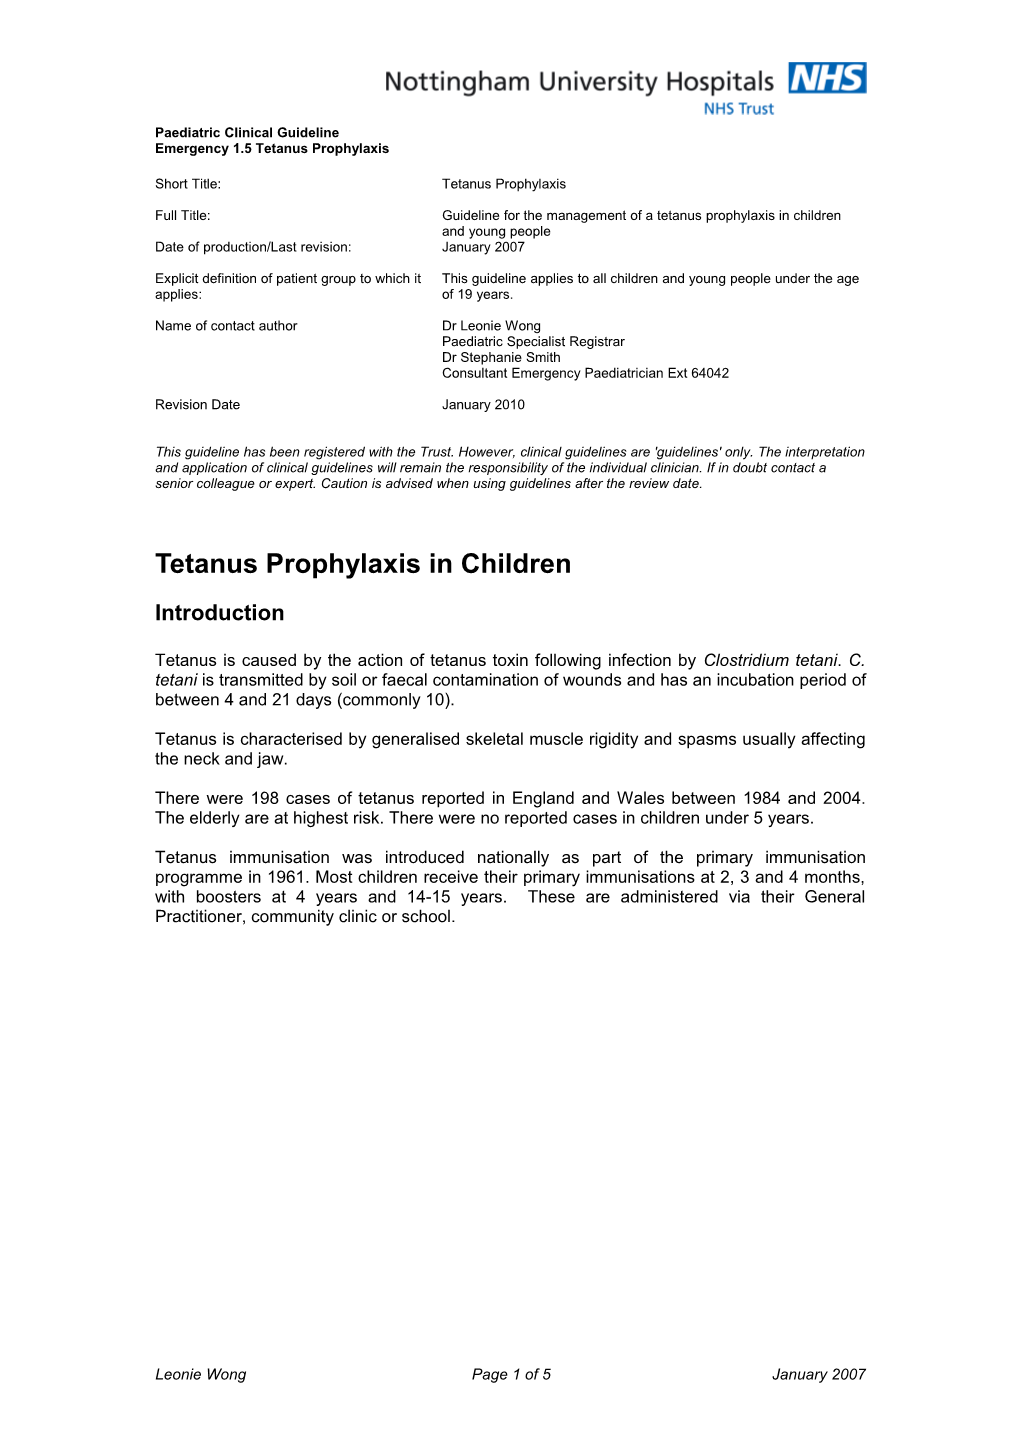 Tetanus Prophylaxis in Children